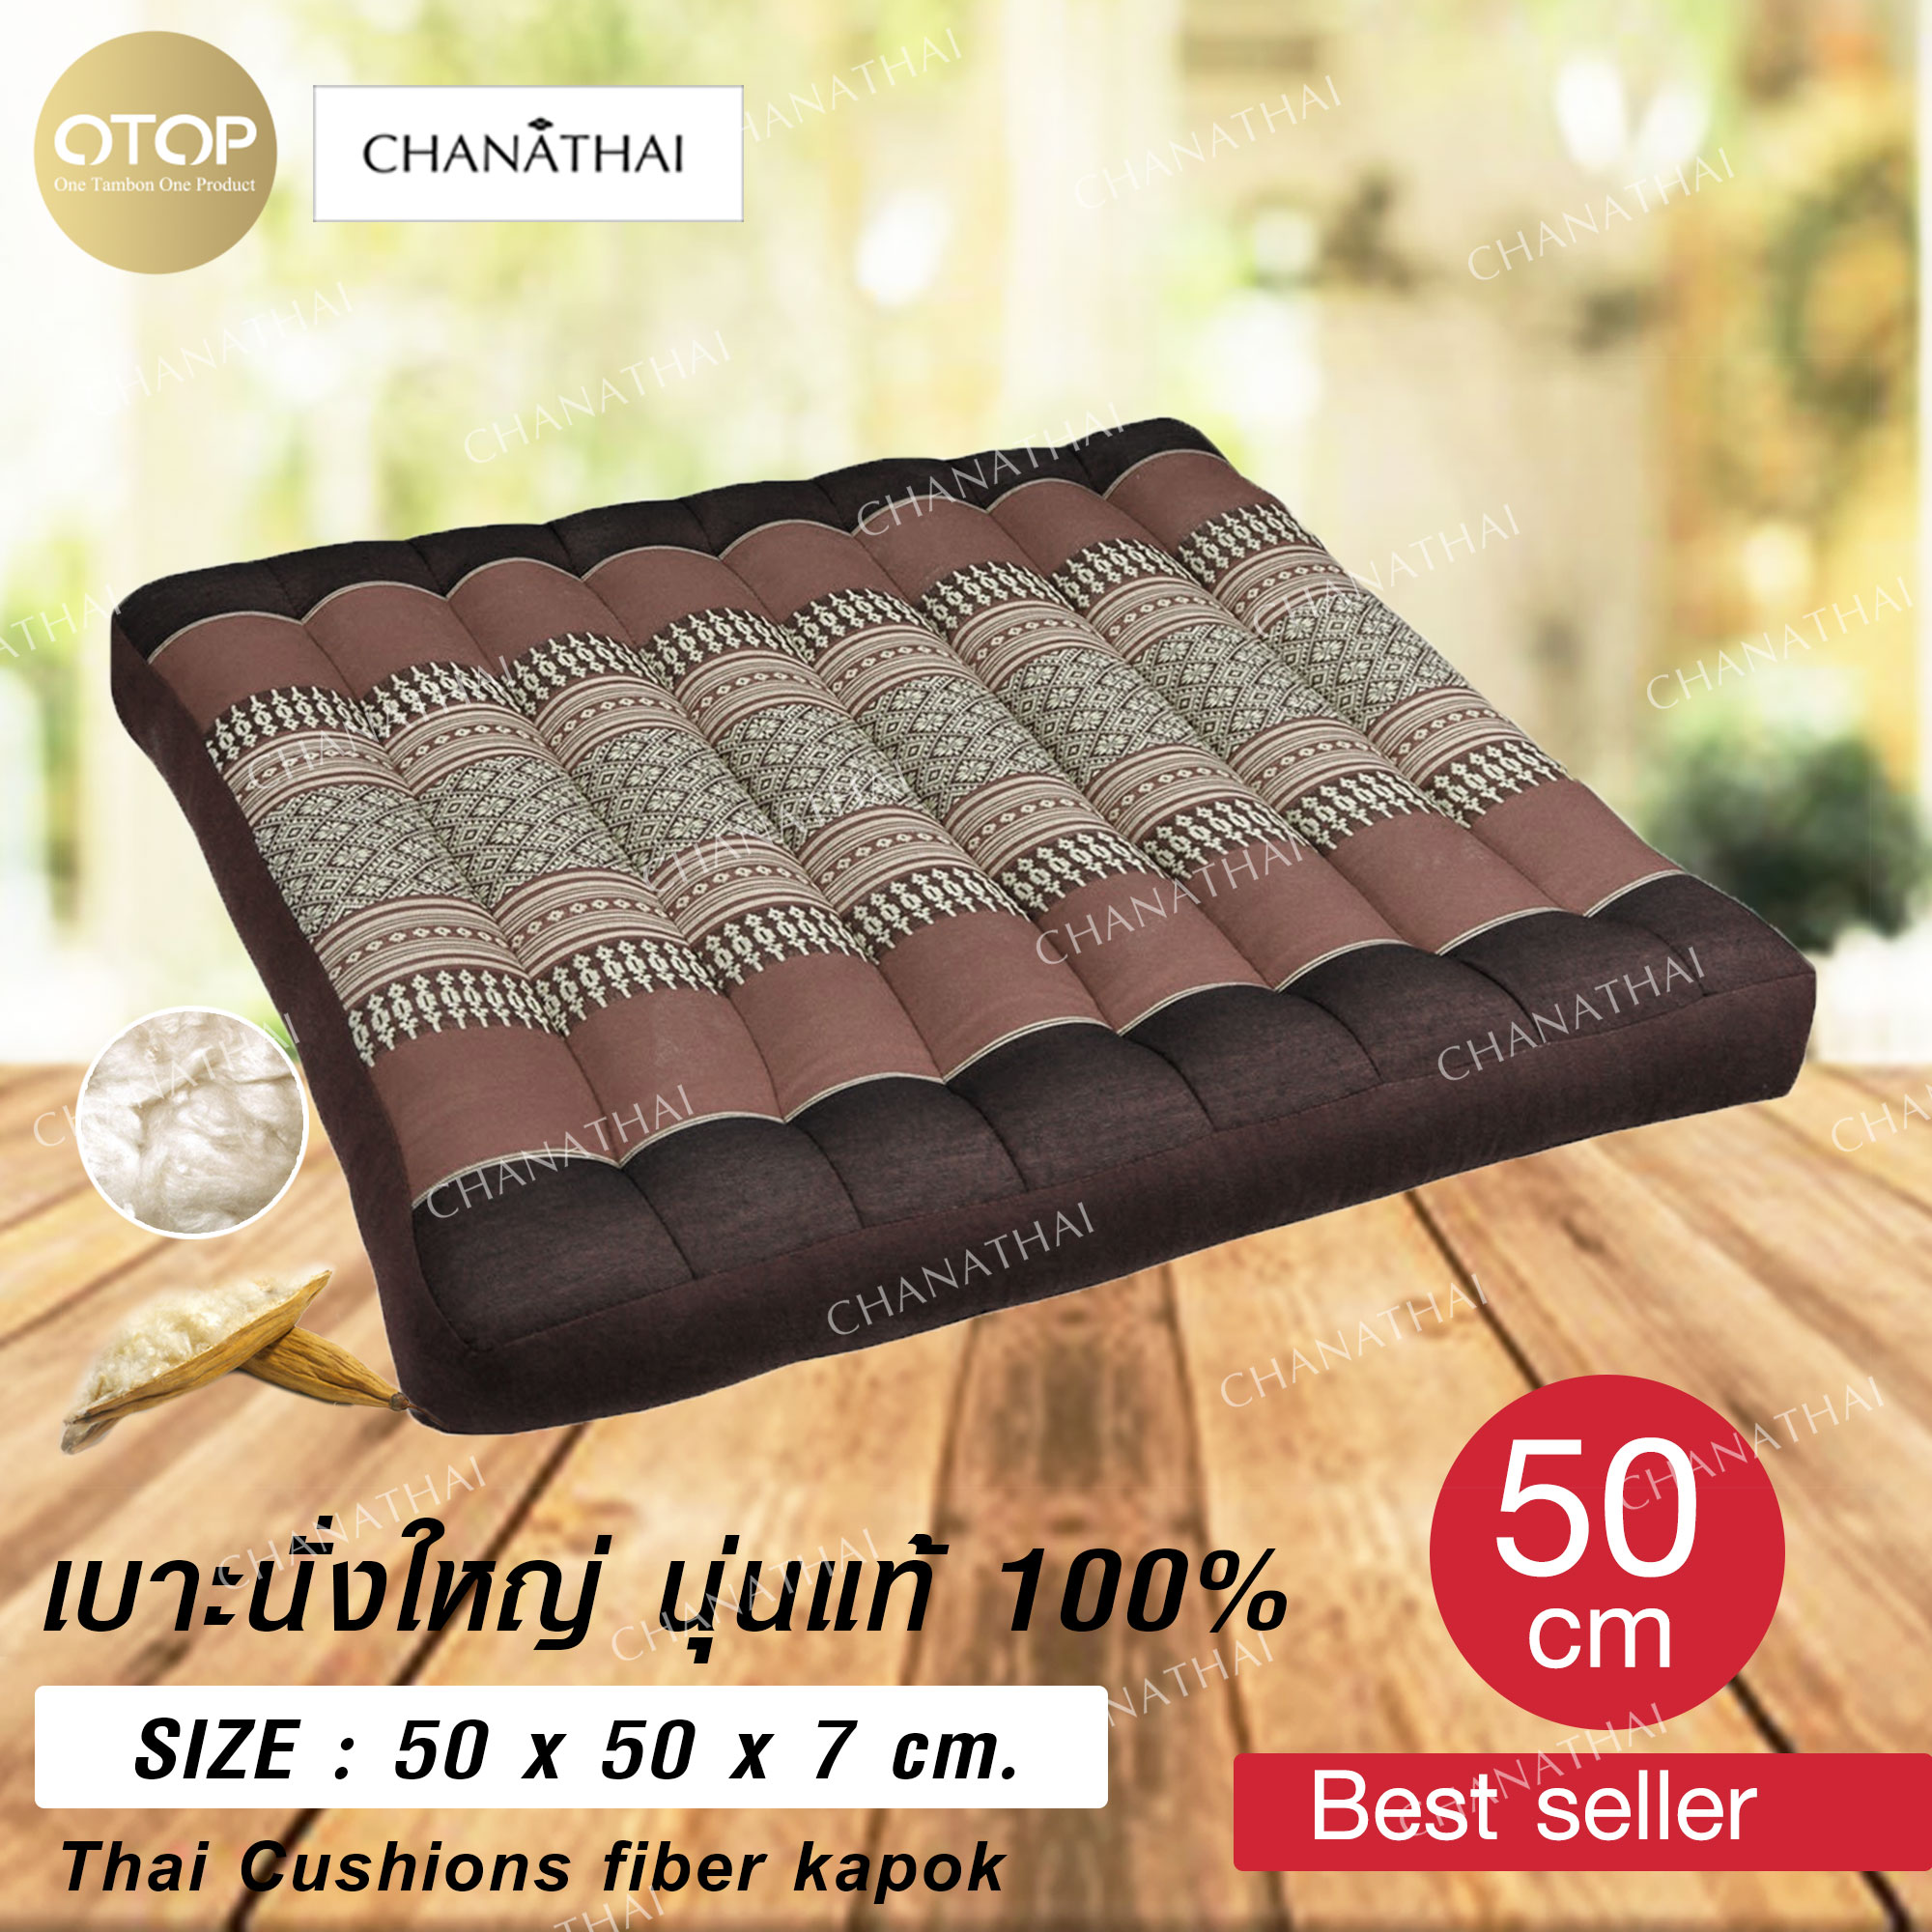 Chanathai เบาะรองนั่งใหญ่ นุ่นแท้ 100% เบาะนั่งสมาธิ ขนาด 50 x 50 cm.